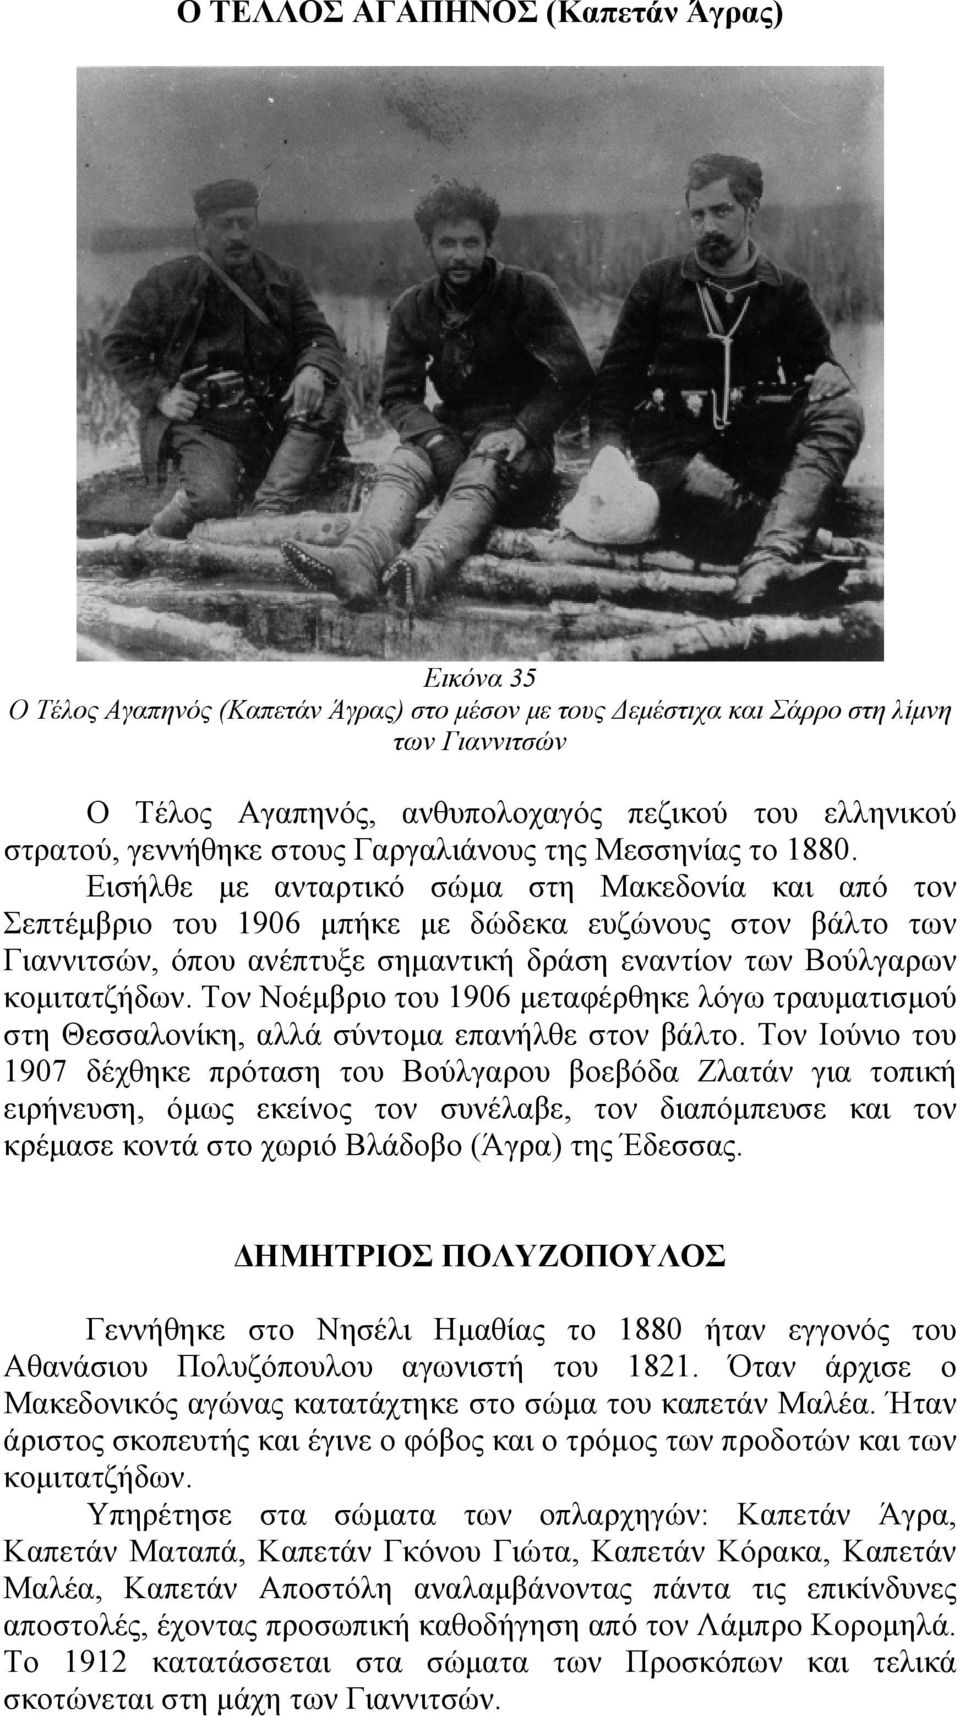 Εισήλθε με ανταρτικό σώμα στη Μακεδονία και από τον Σεπτέμβριο του 1906 μπήκε με δώδεκα ευζώνους στον βάλτο των Γιαννιτσών, όπου ανέπτυξε σημαντική δράση εναντίον των Βούλγαρων κομιτατζήδων.